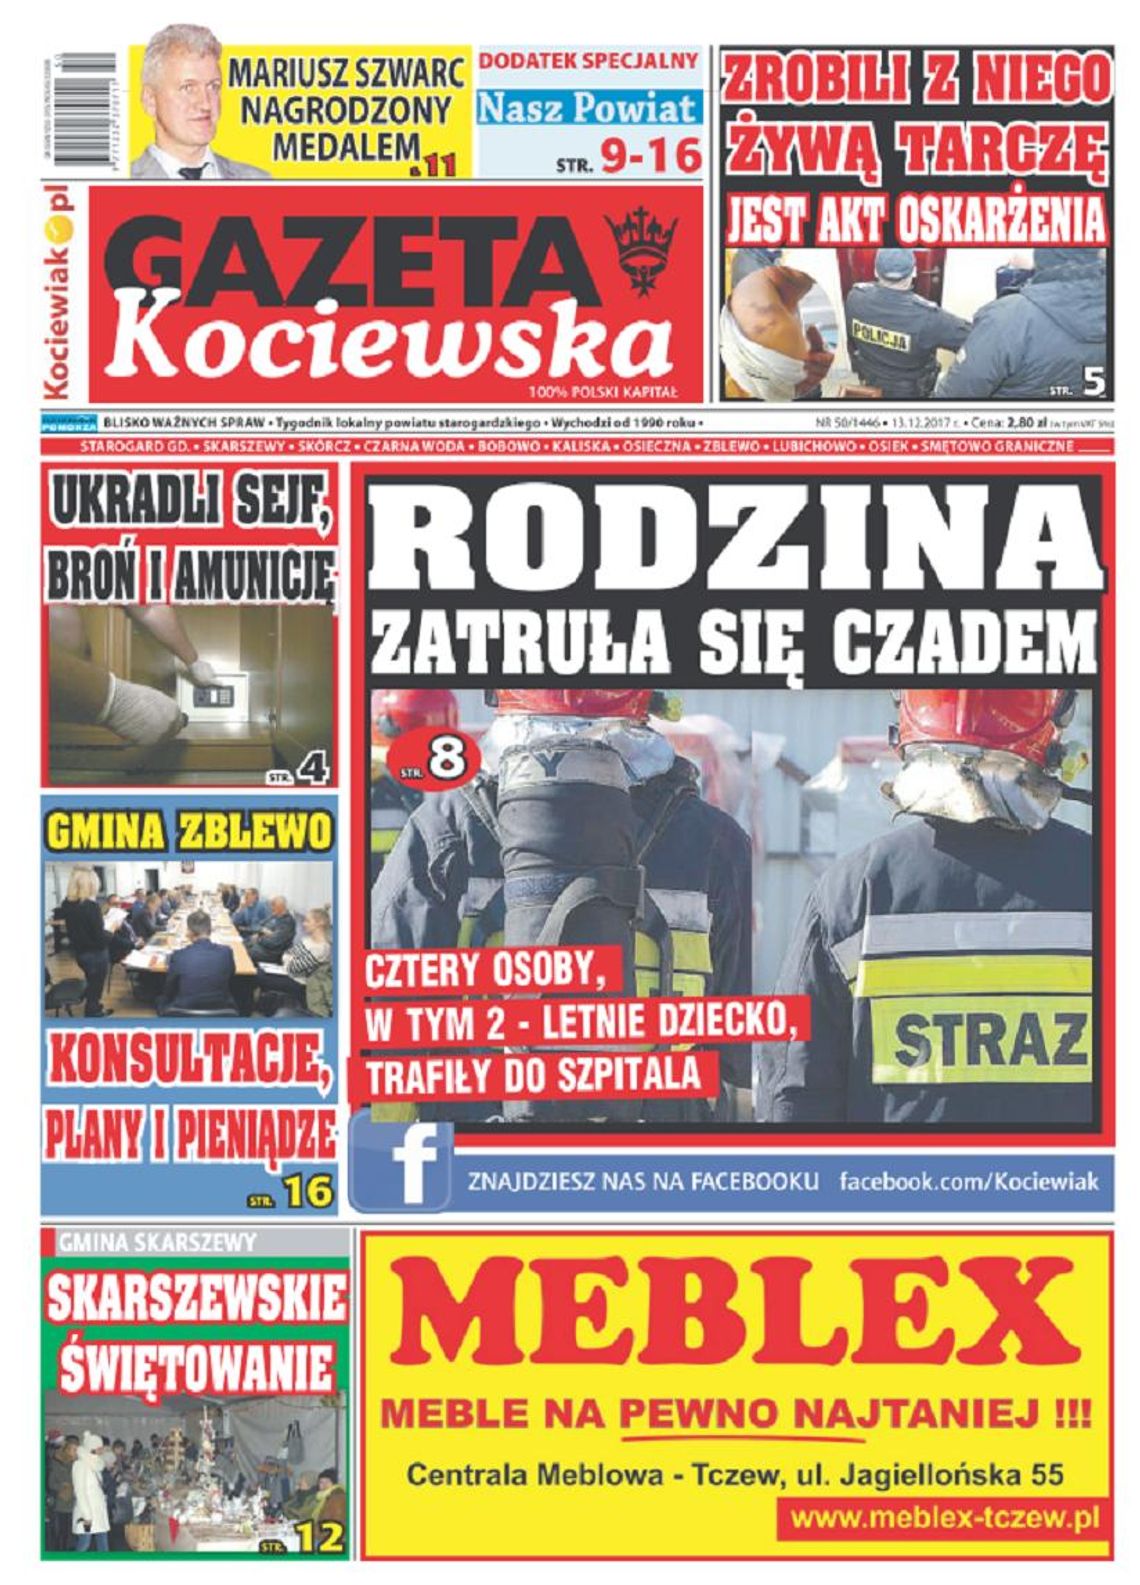 Najnowsza Gazeta Kociewska już w kioskach! 